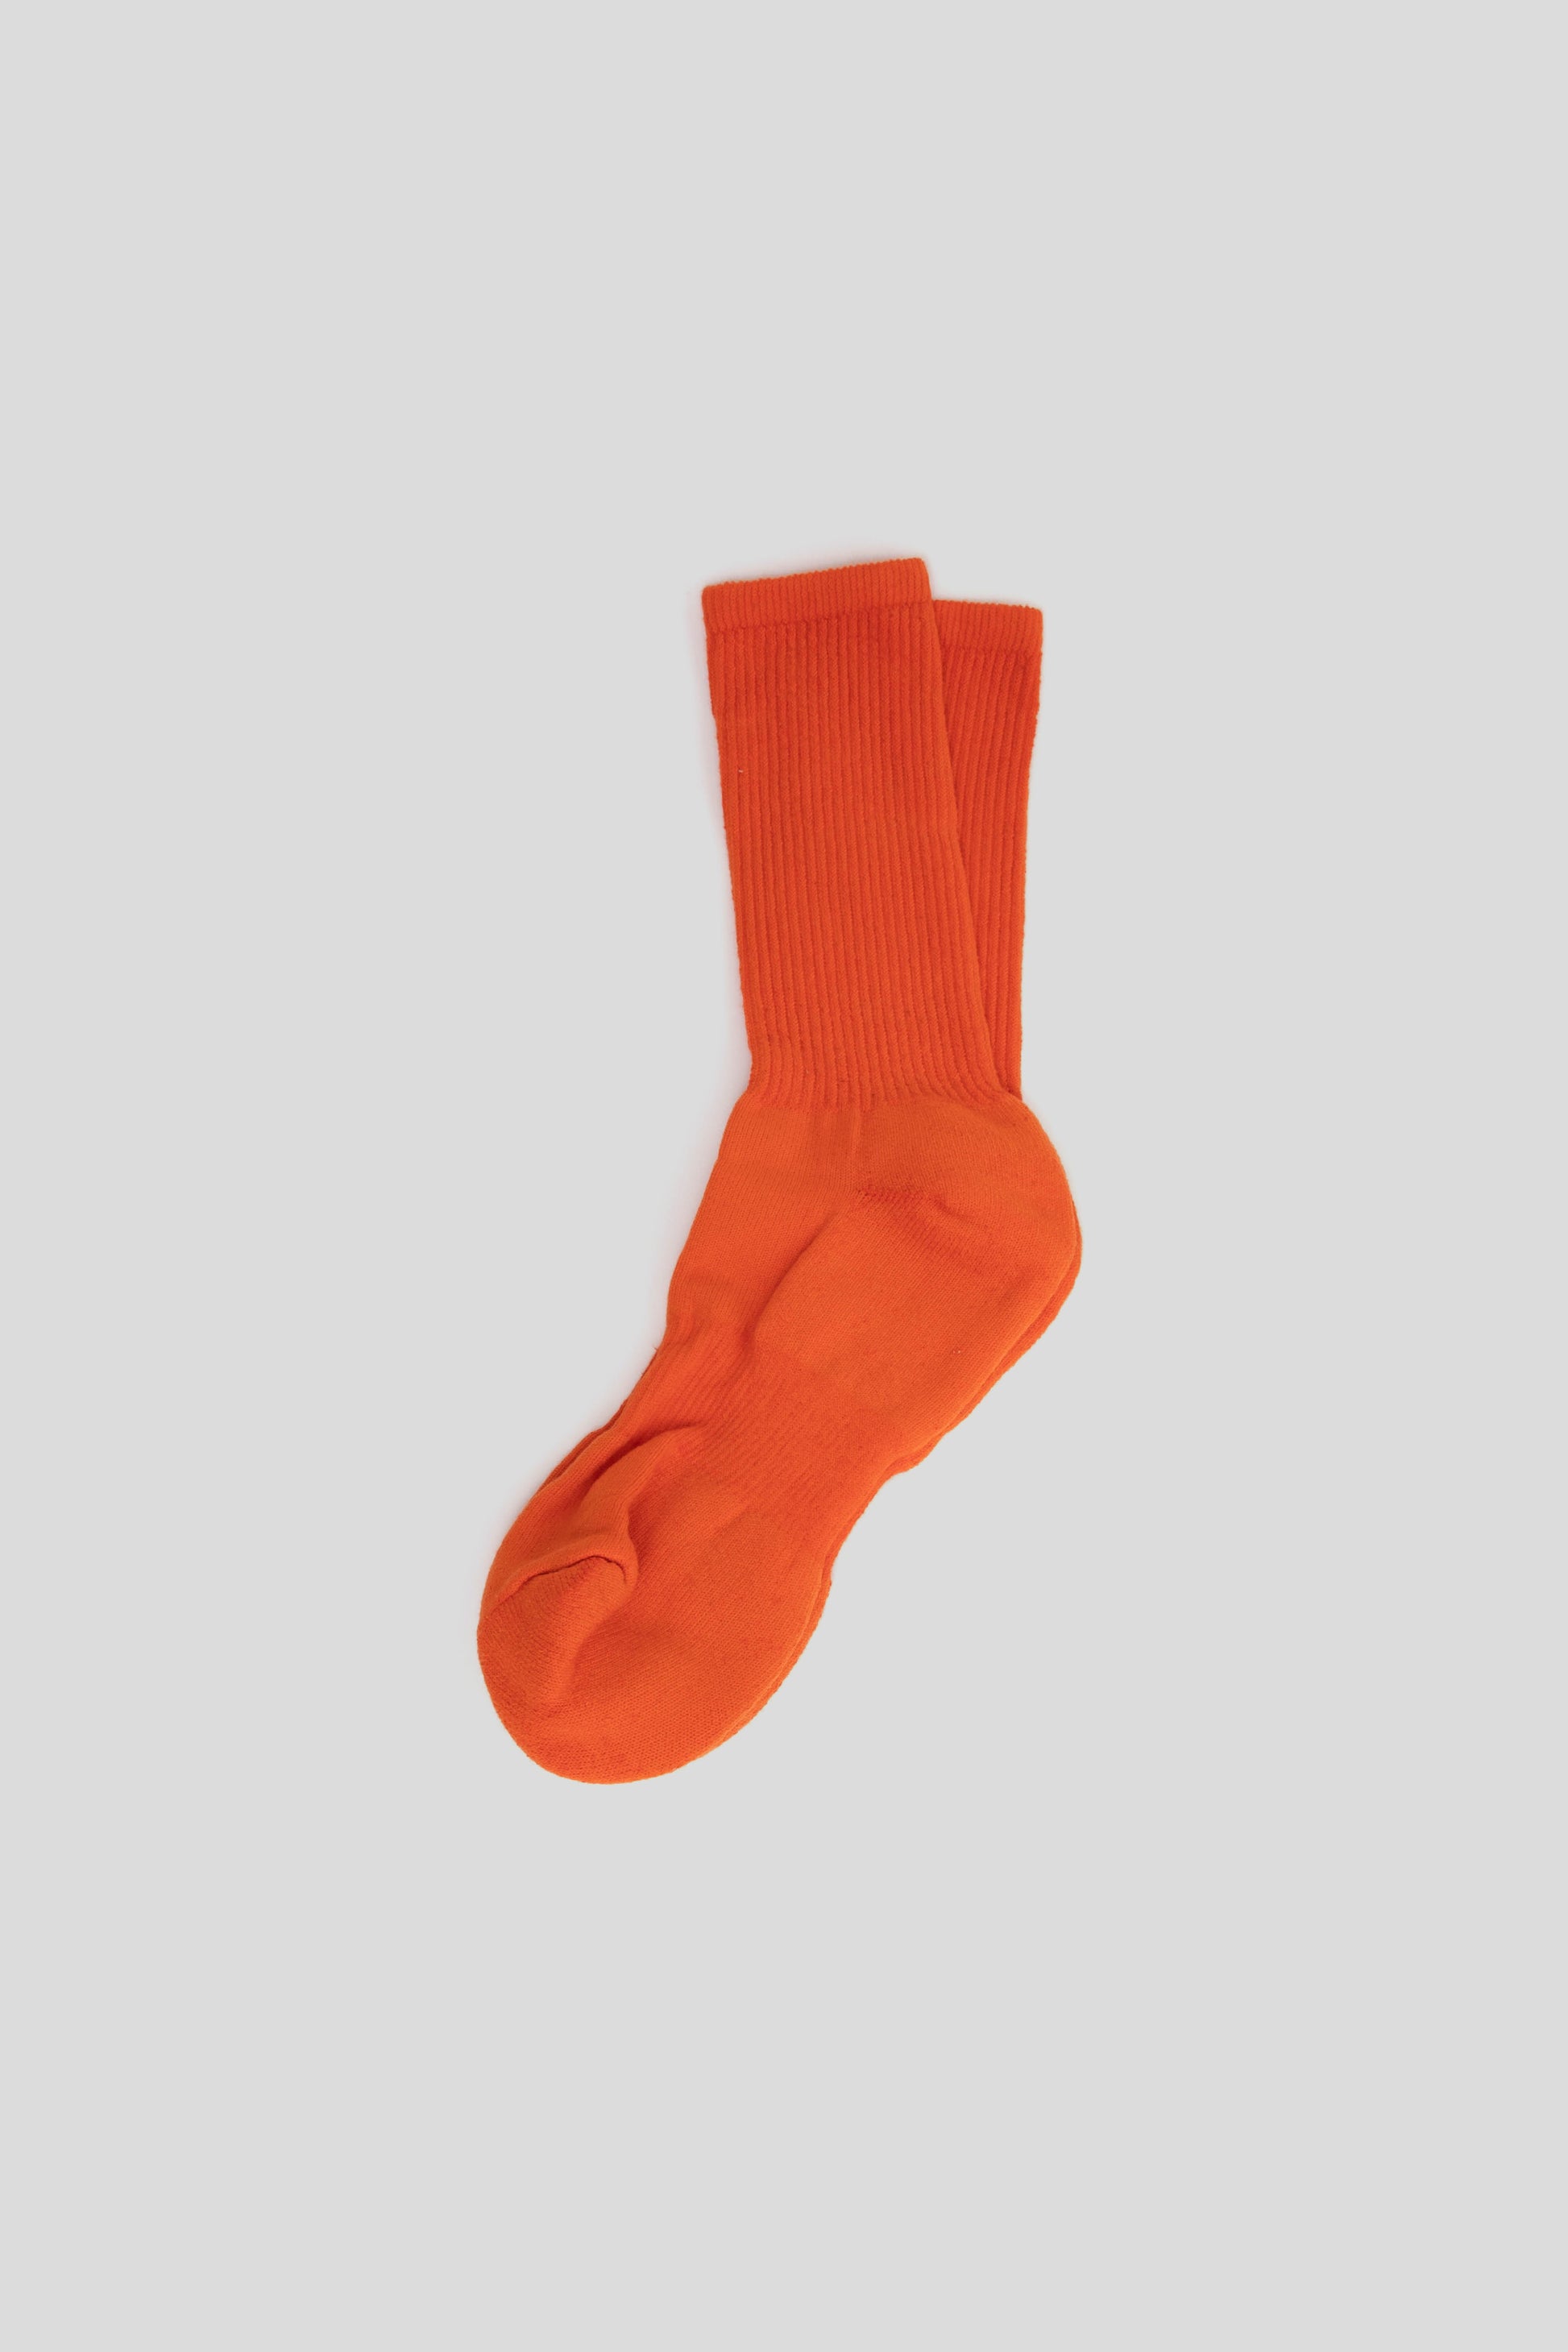 American Trench Mil-Spec Sport Sock in Safety Orange